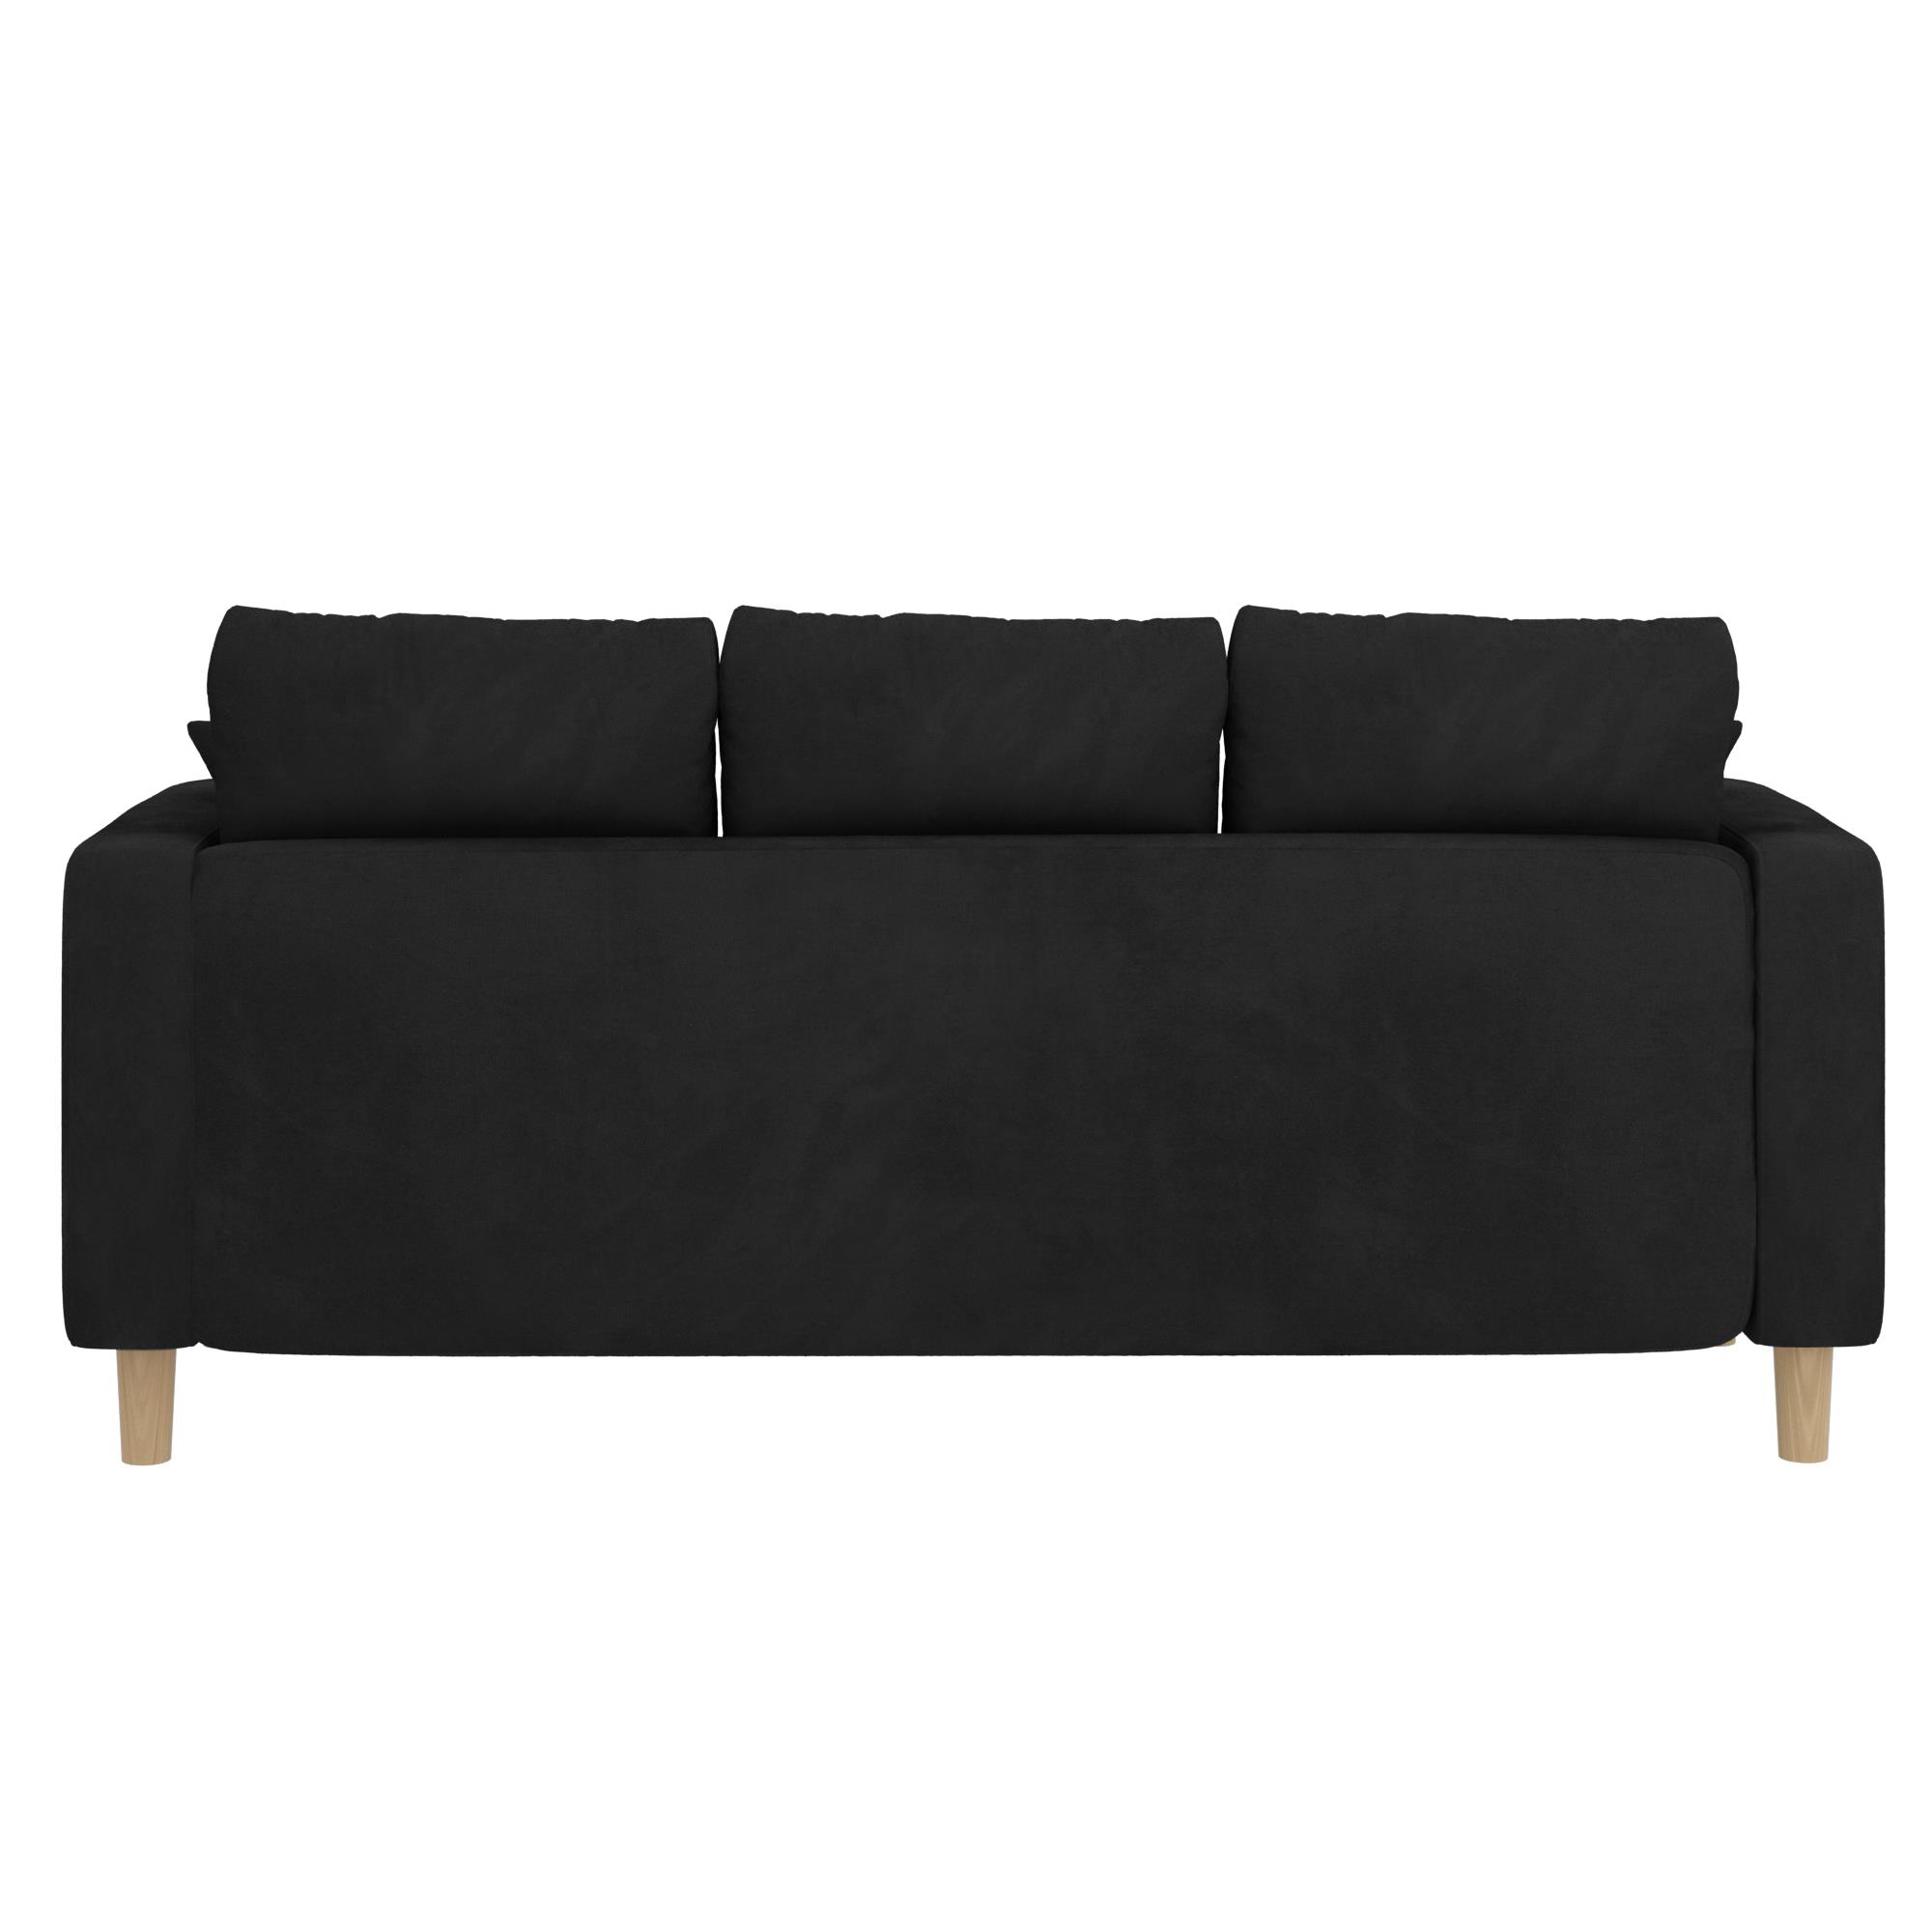 ספה תלת מושבית דגם ליסבון צבע שחור